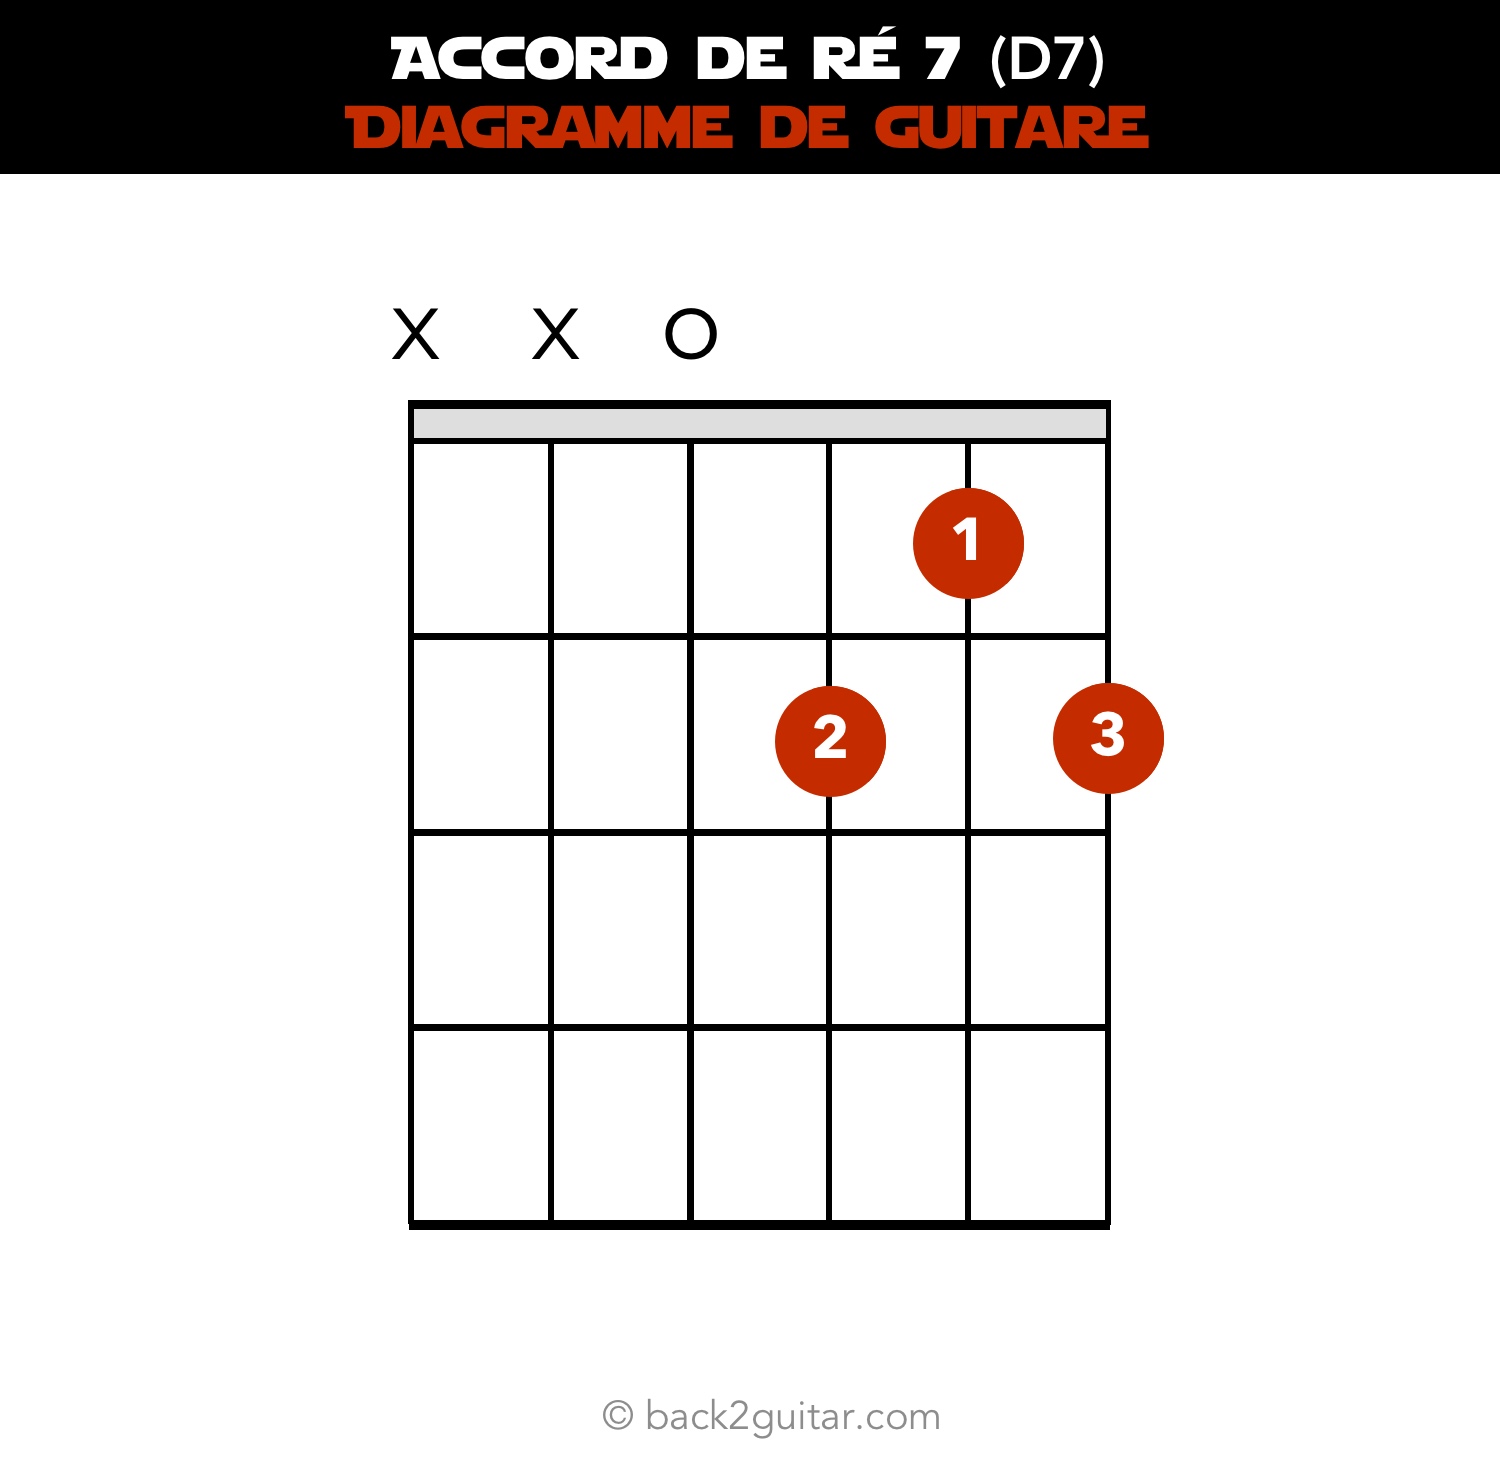 accord guitare ré 7 diagramme guitare (D7)